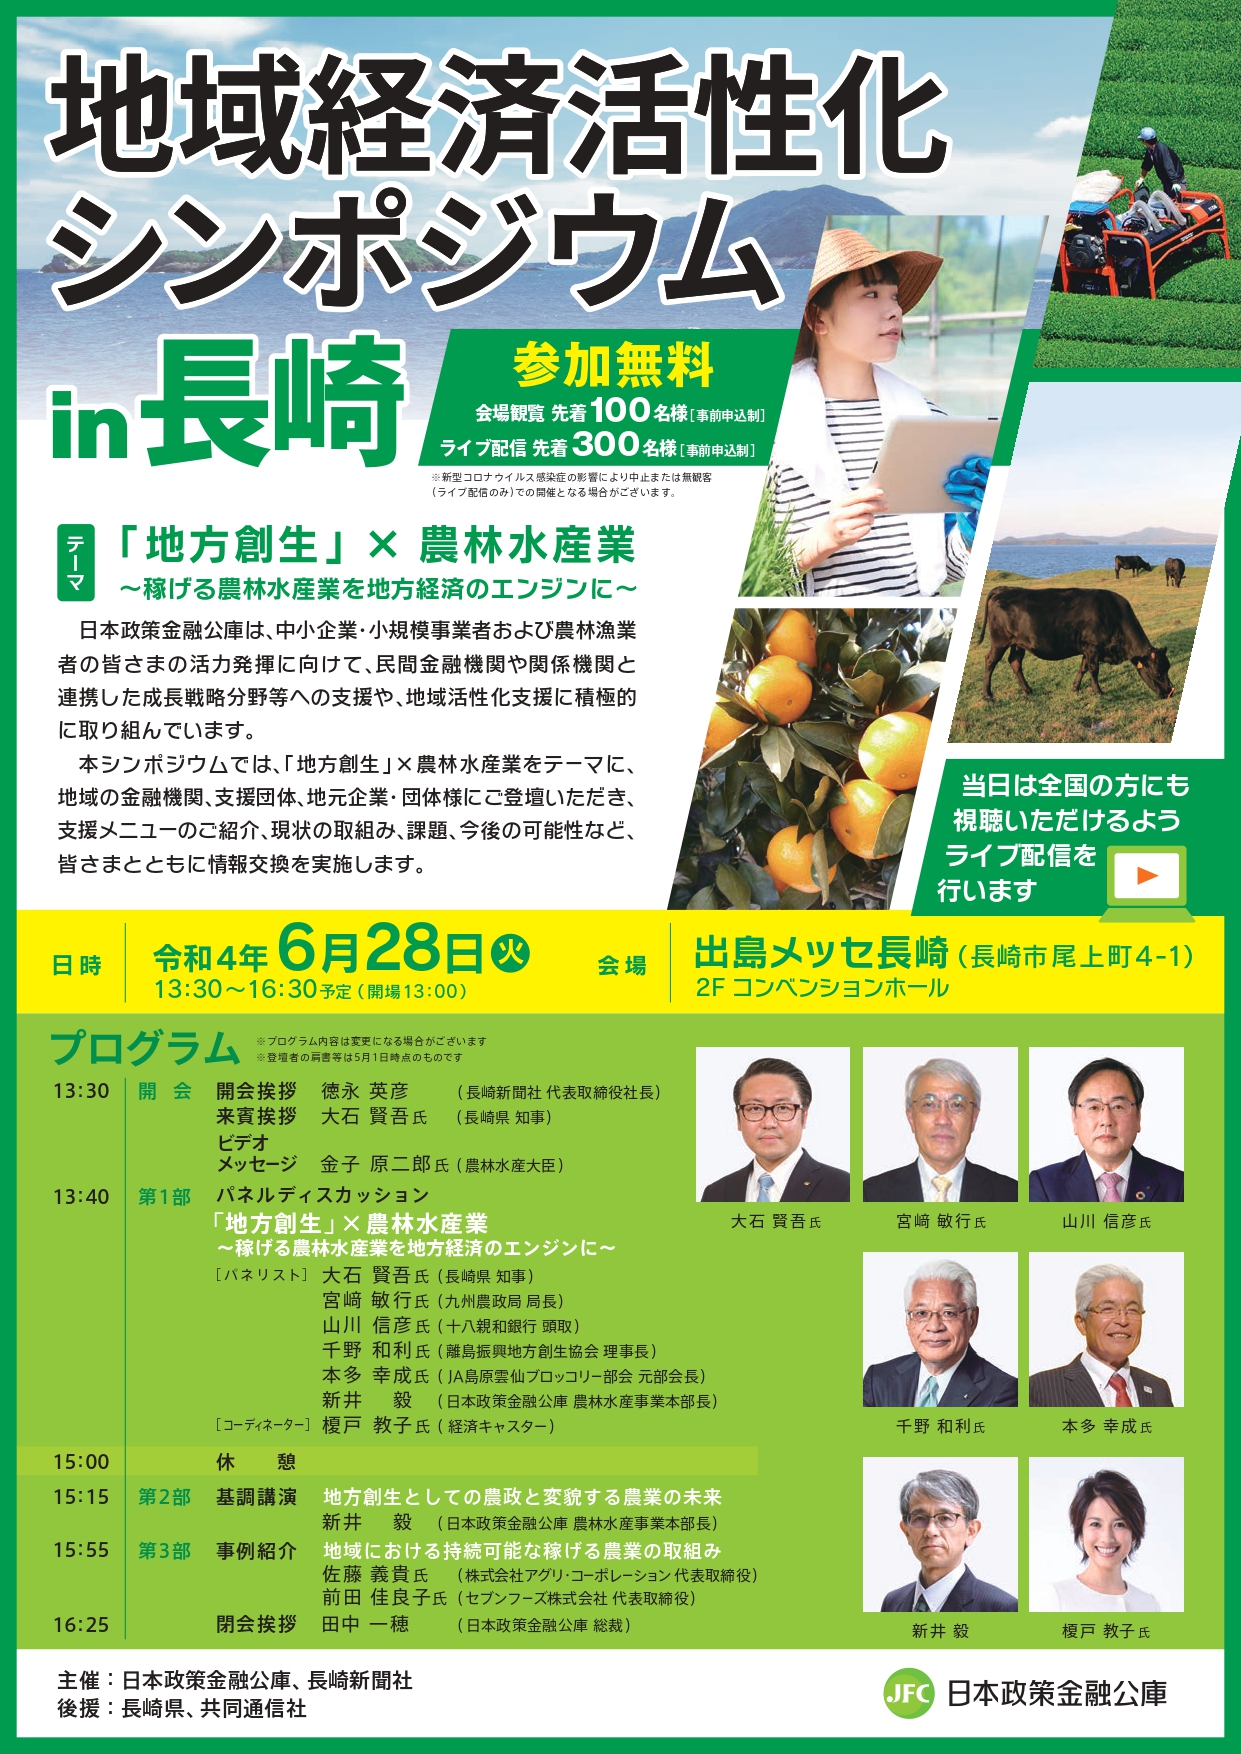 【6月28日】「地域経済活性化シンポジウムin長崎」の開催について